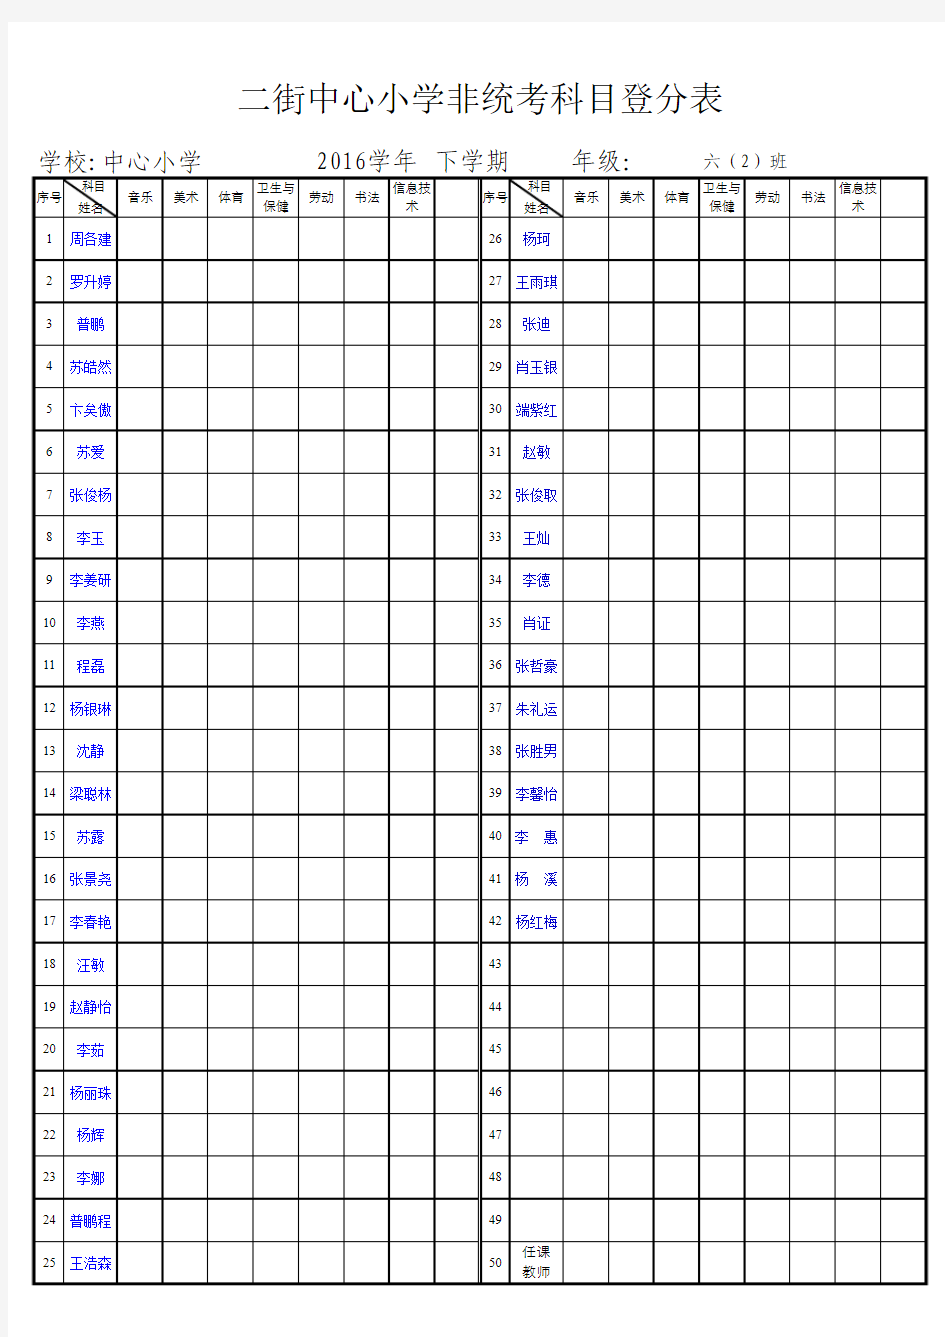 二街中心小学2016学年下学期非统考科目登分表(班级空表)